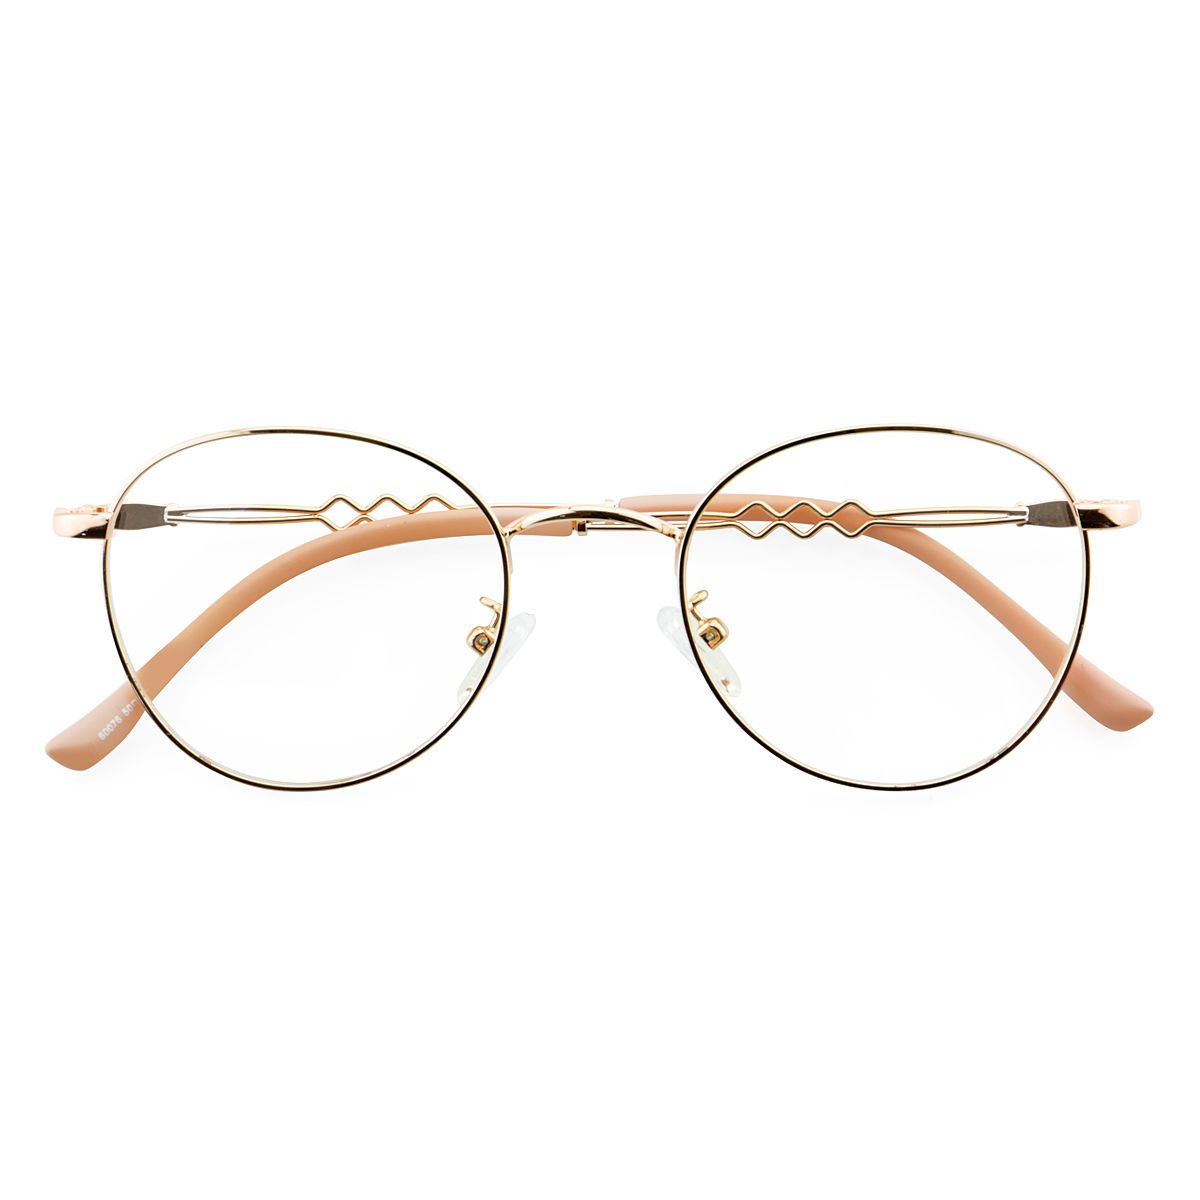 60076 Round Pink Eyeglasses Frames | Leoptique